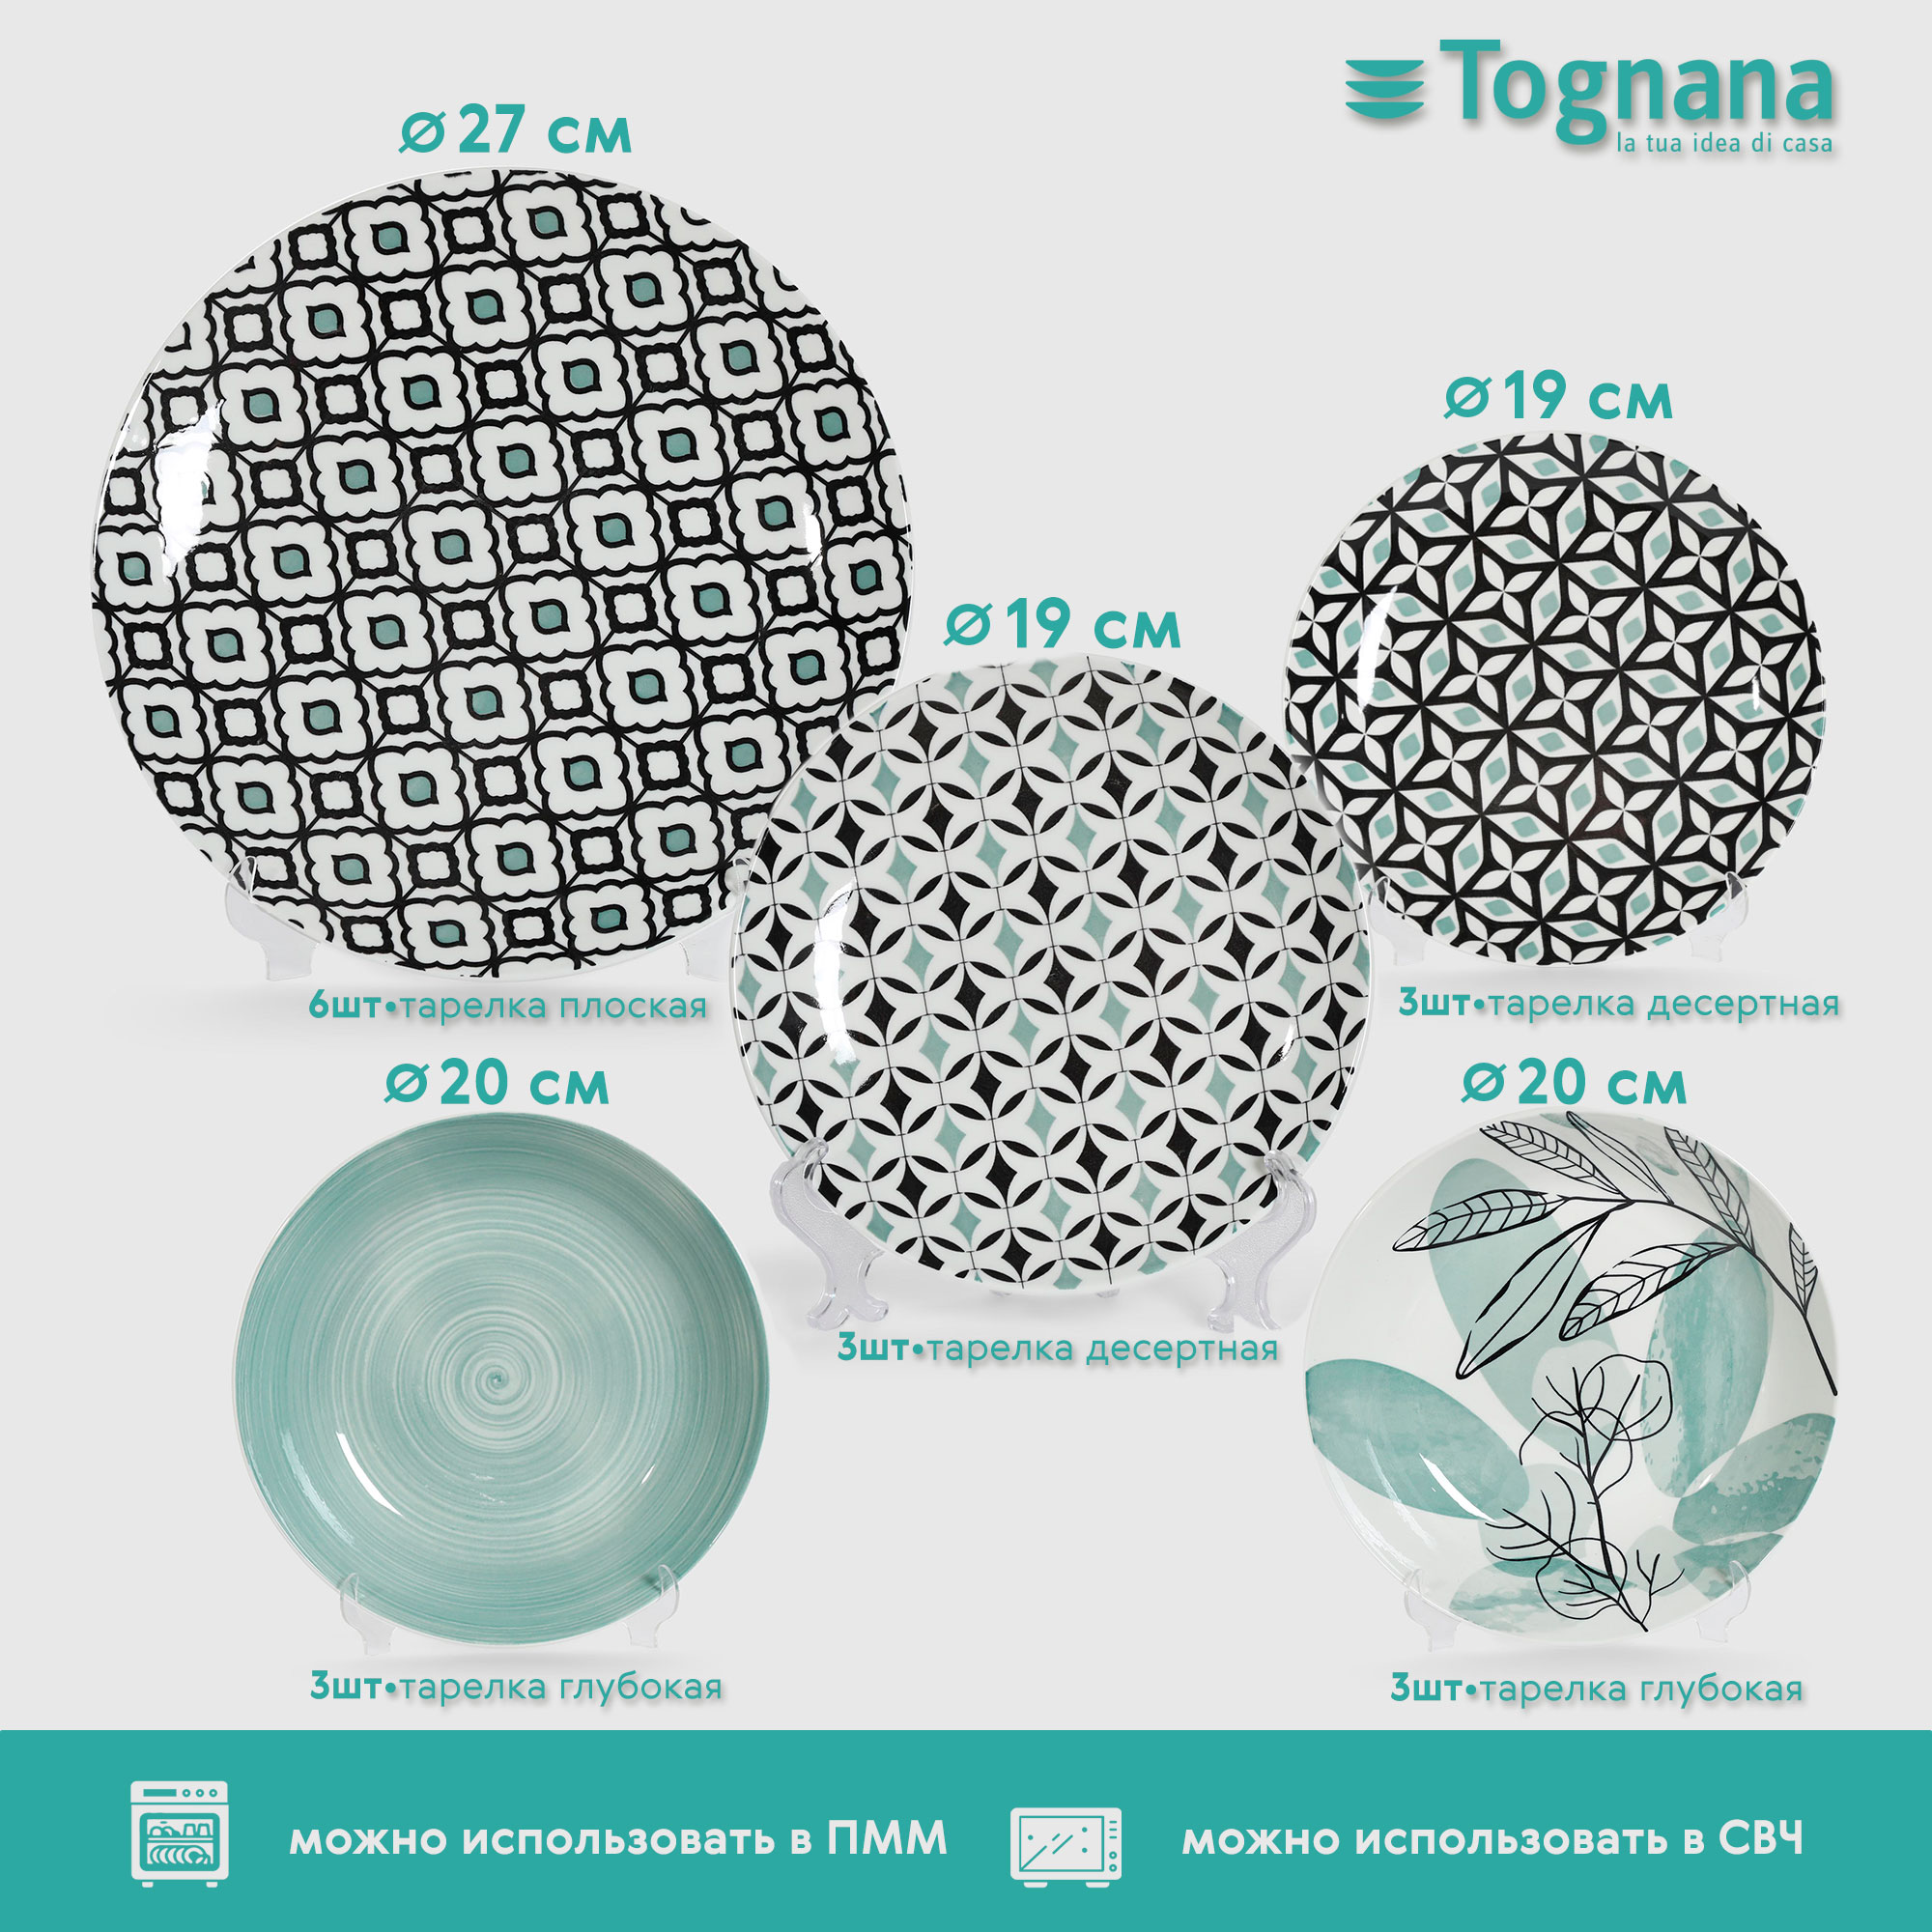 Сервиз столовый Tognana Giada 6 персон 18 предметов, цвет зеленый - фото 2